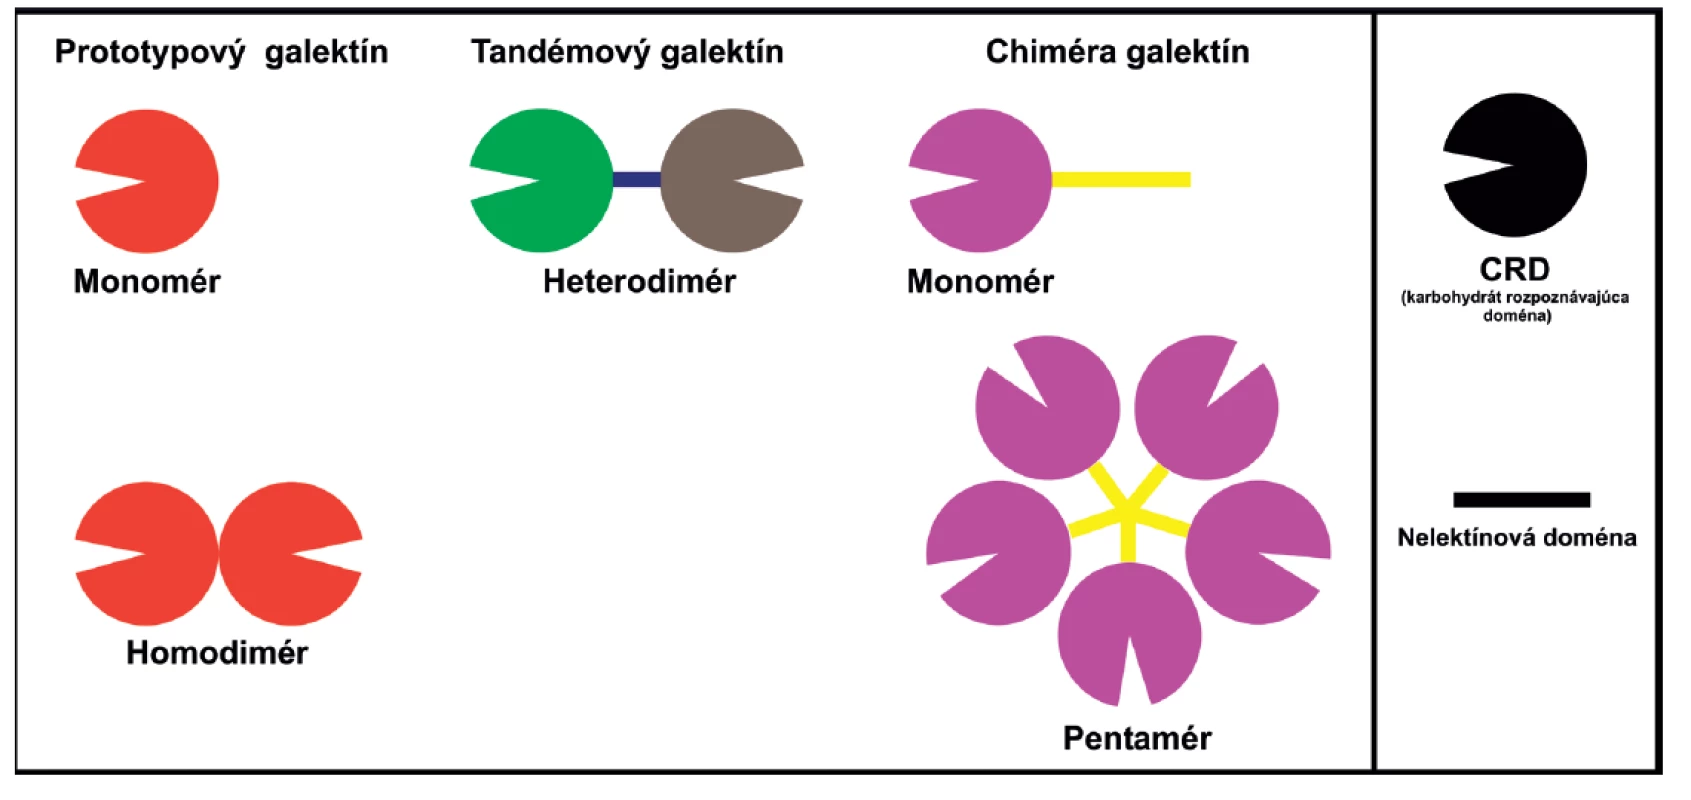 Schematické znázornenie štruktúry galektínov. Prototypové galektíny (1, 2, 5, 7, 10, 11, 13, 14 a 15), obsahujúce jednu (monomér) alebo dve identické CRD (homodimér). Chimerický galektín (3) je zložený z nelektínovej domény napojenej na CRD može byť vo forme monoméru, ale aj spájaný až do pentaméru. Tandemové galektíny (4, 6, 8, 9, a 12), pozostávajúce z 2 CRD navzájom spojených krátkym polypeptidovým reťazcom.